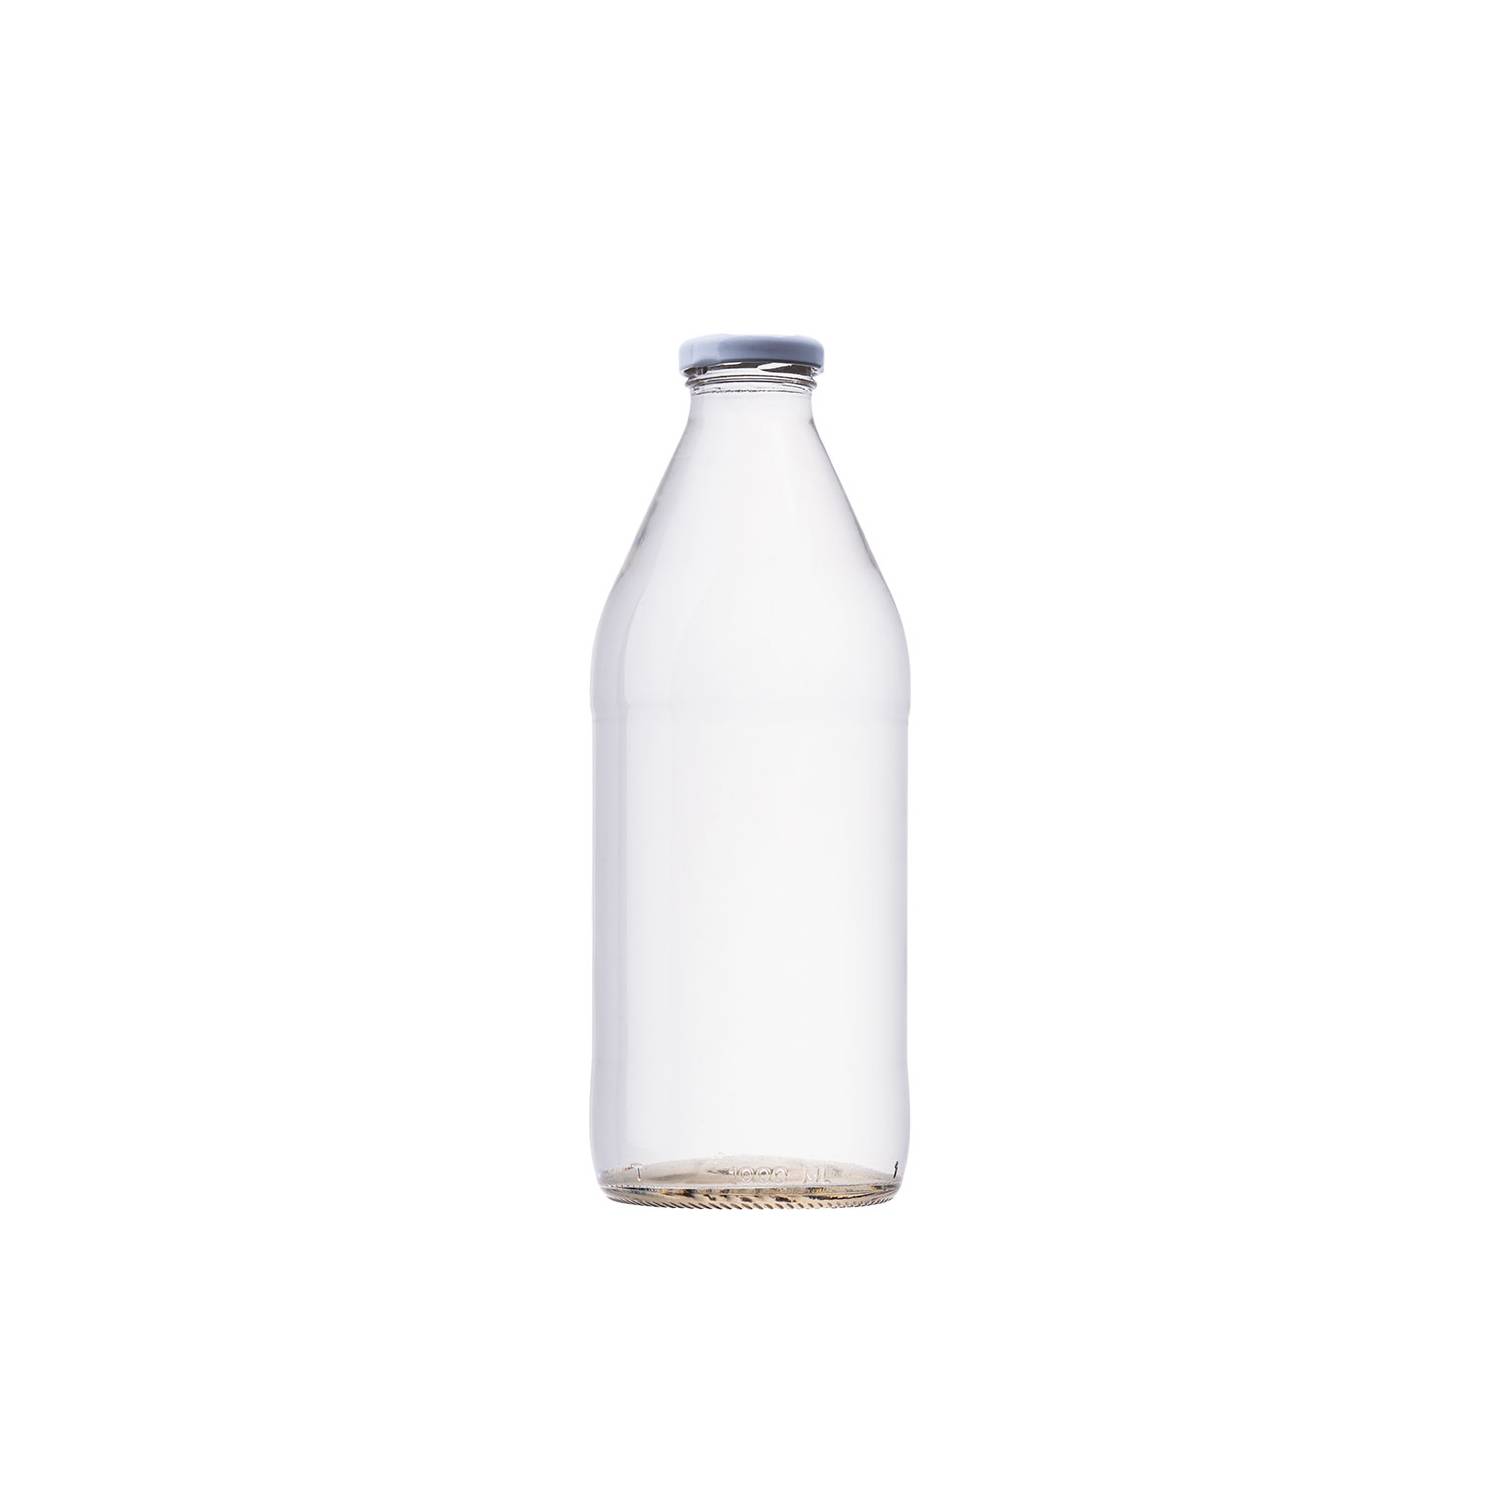 GENERICO Botella de Vidrio Lechera 1 litro (1.000cc) - Pack de 22 unidades  con tapa